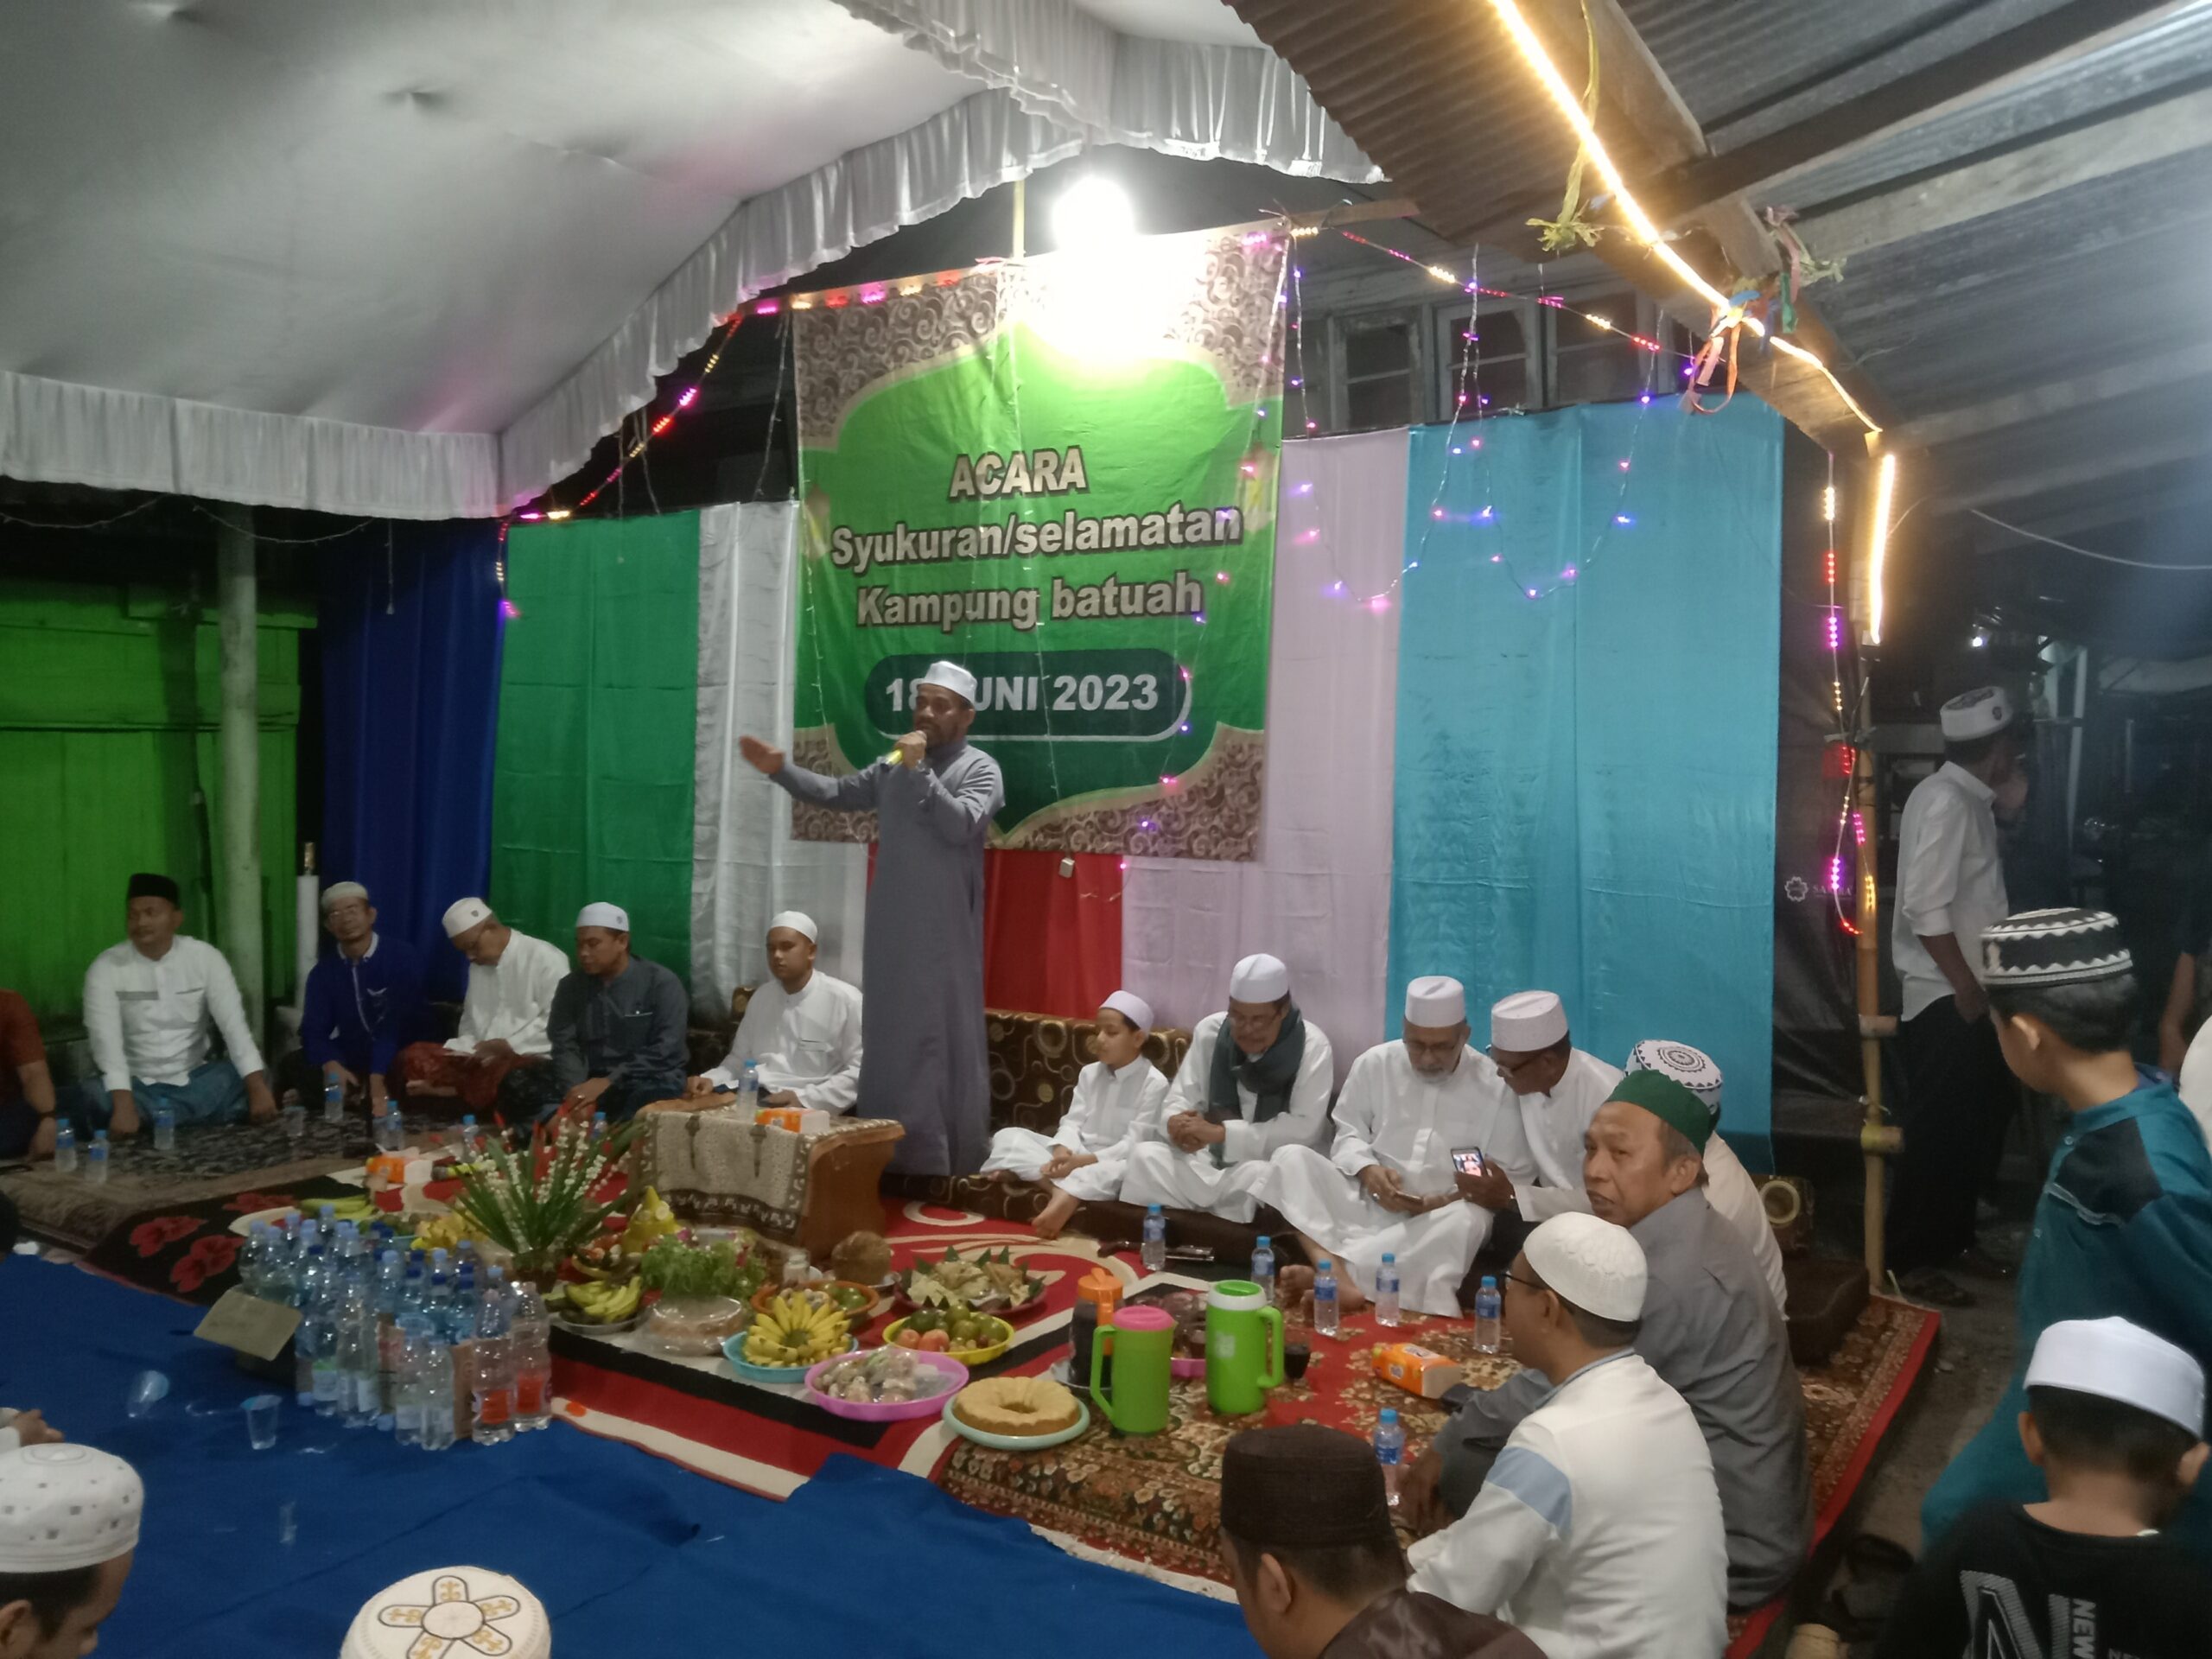 Manaqib Syekh Samman Al Madani di Kampung Batuah Kota Banjarmasin Digelar